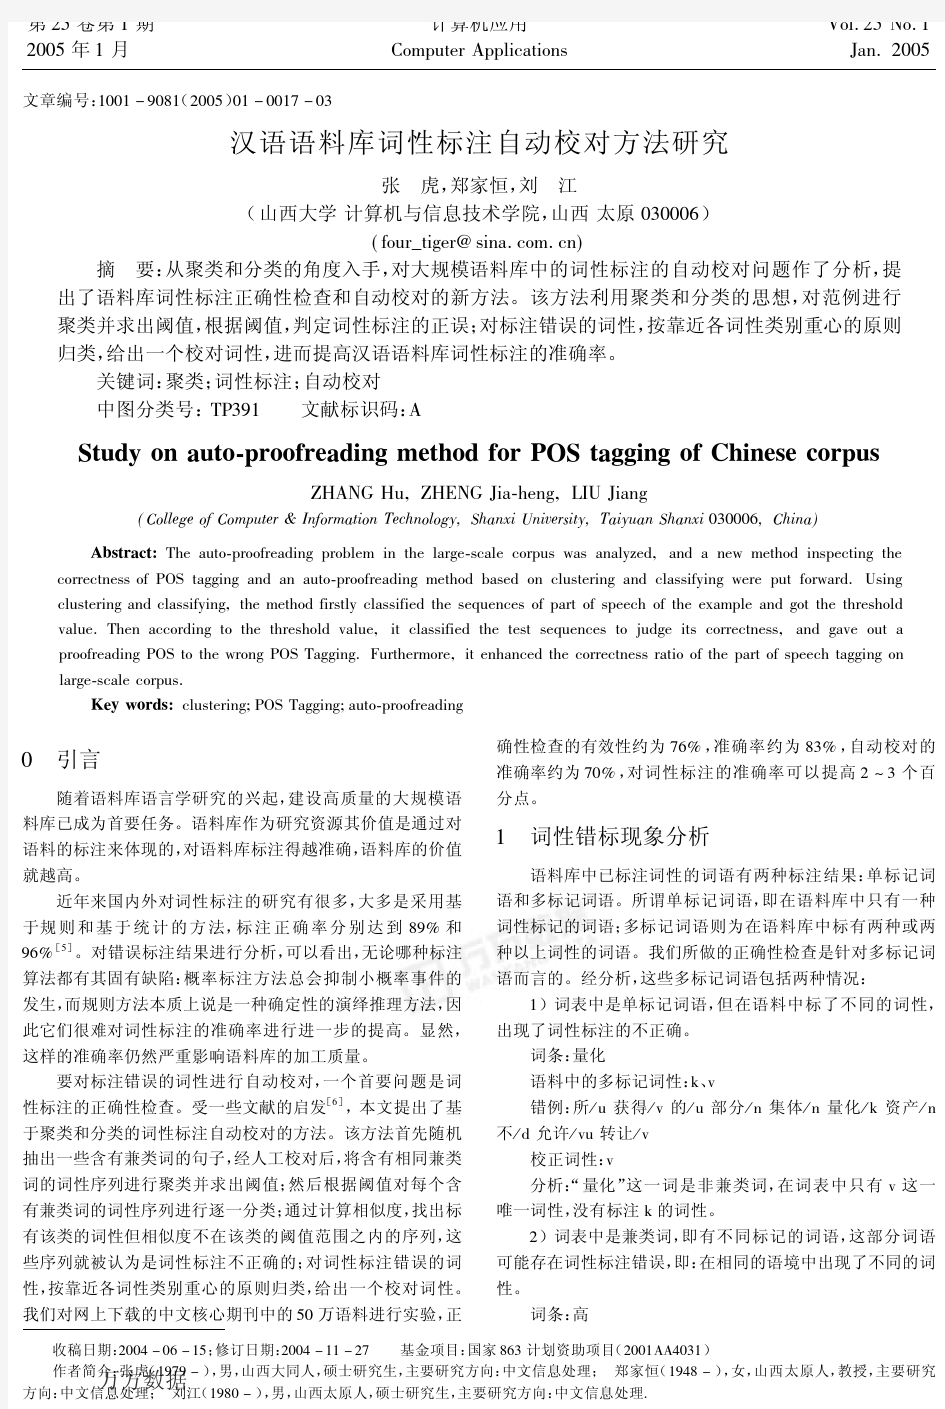 汉语语料库词性标注自动校对方法研究